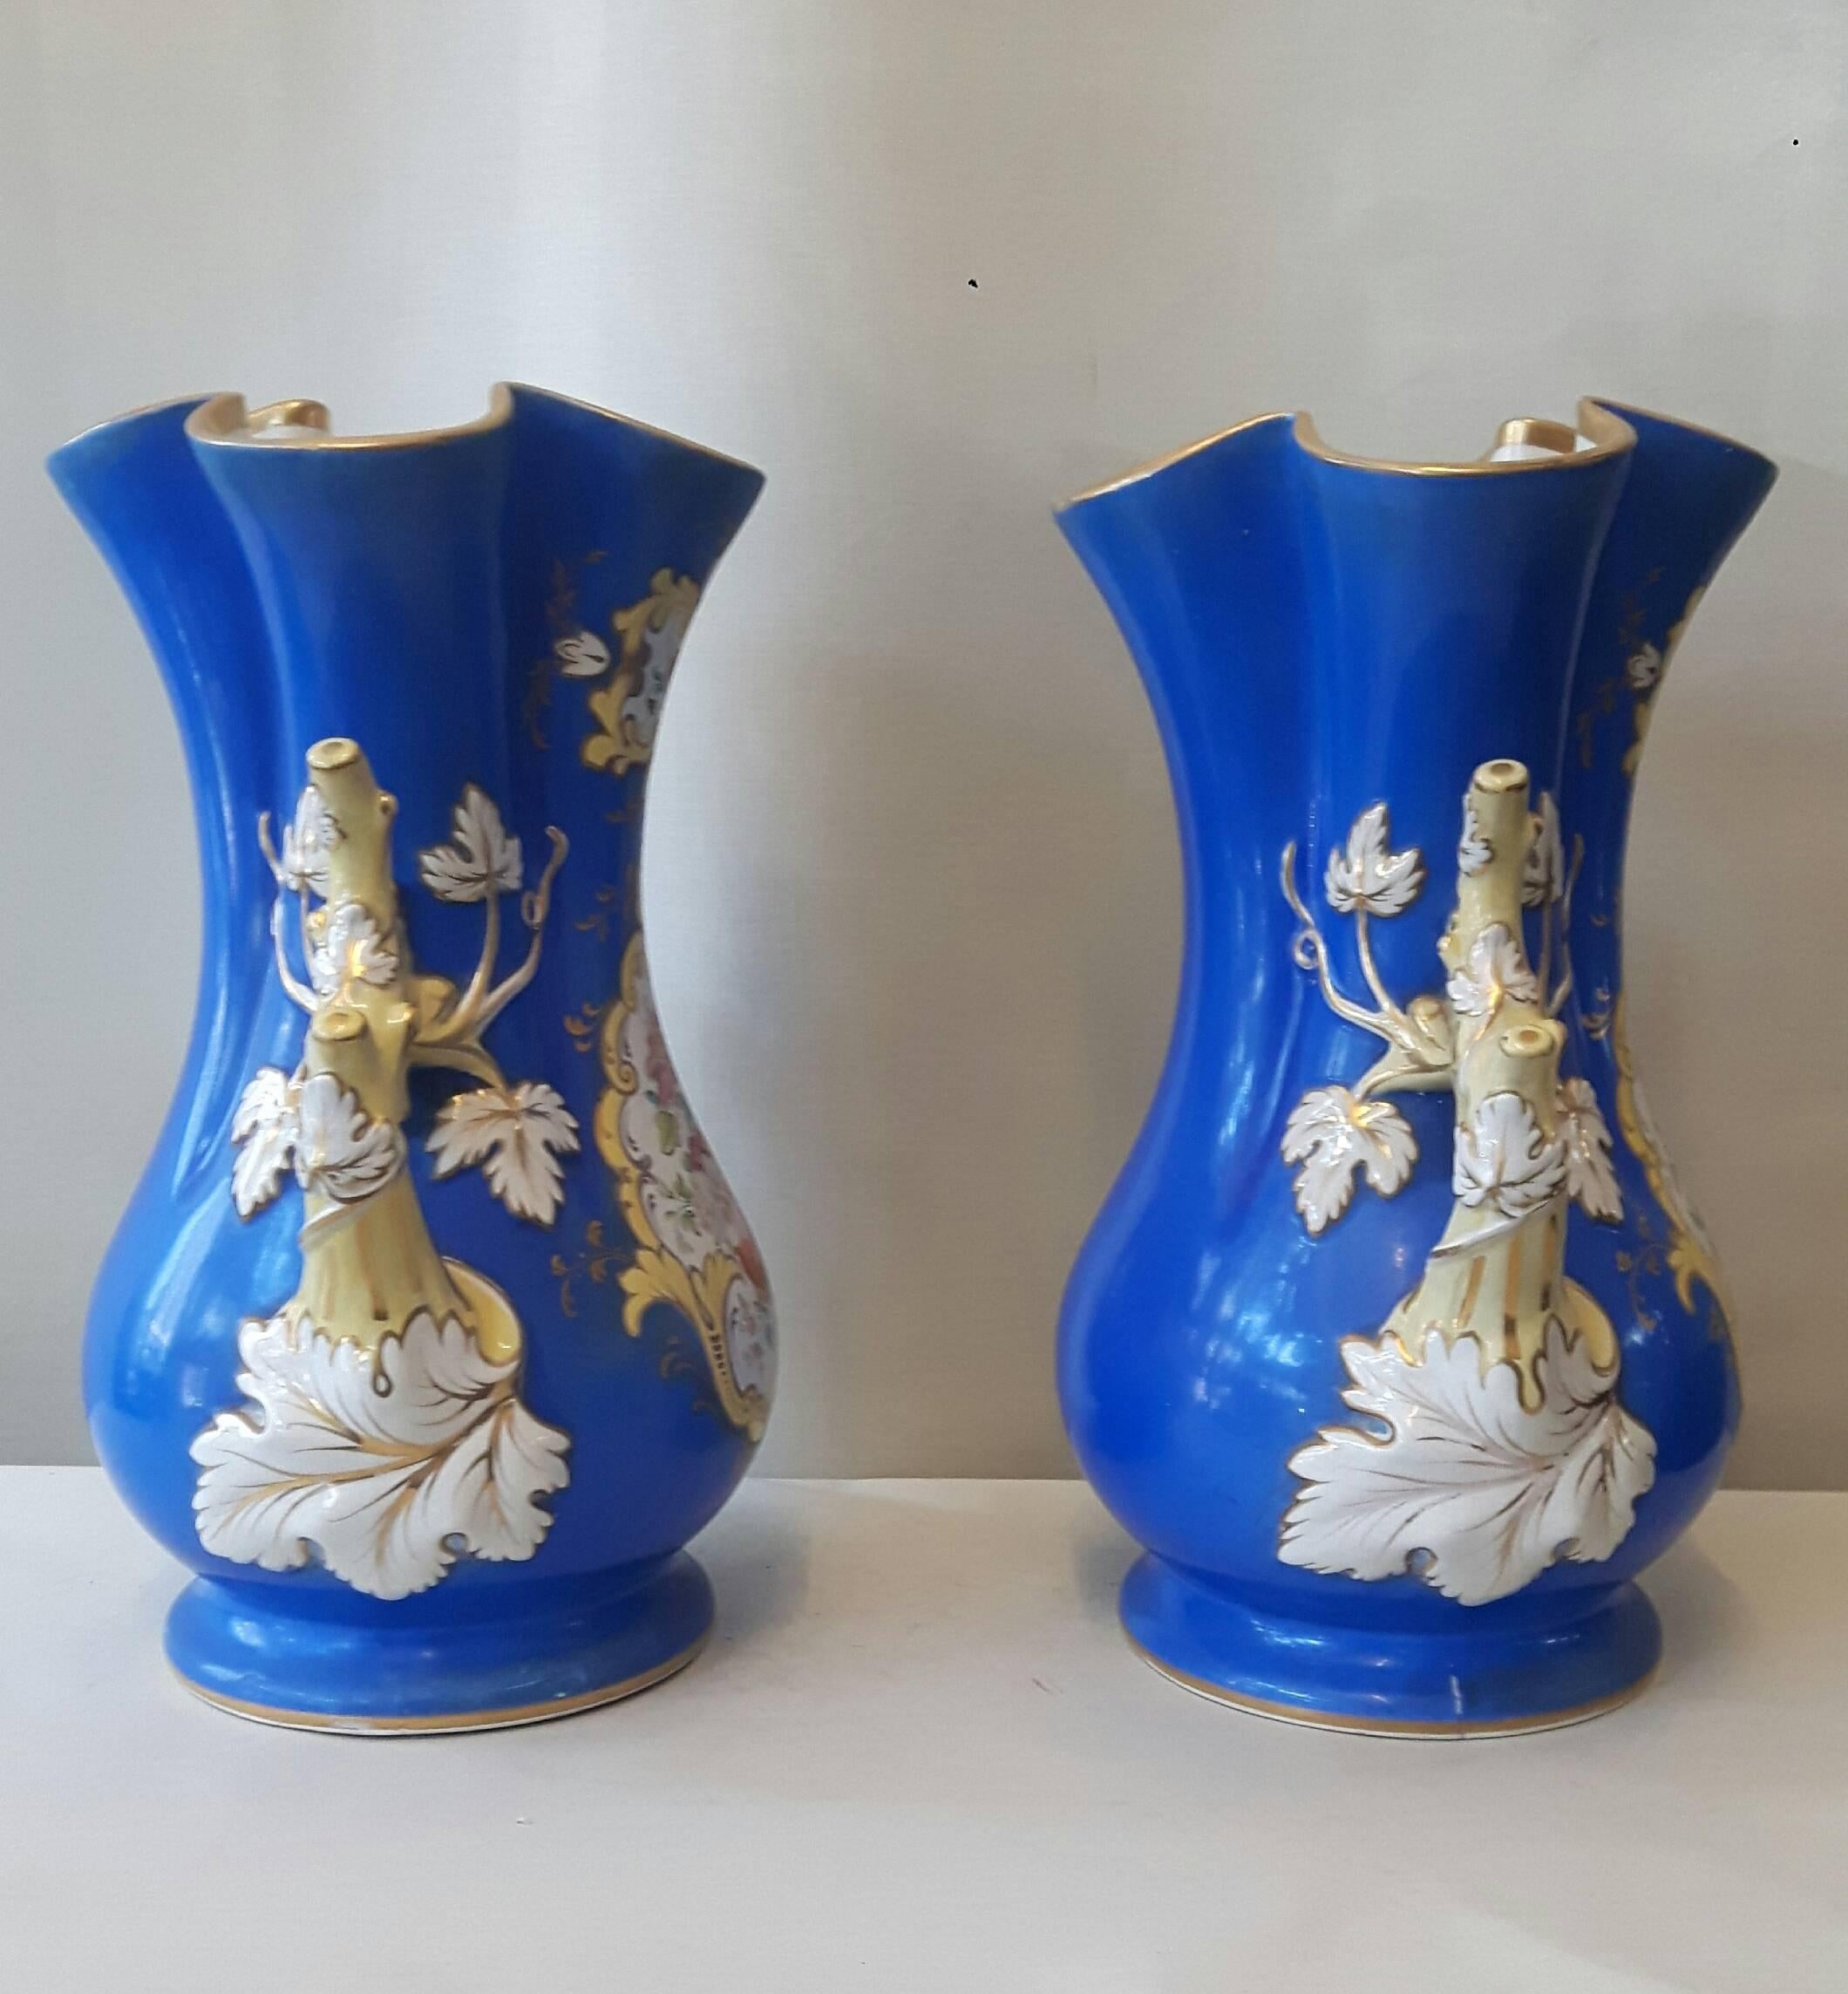 Une paire de vases Ridgway décoratifs, peints à la main avec des panneaux centraux de fleurs et des poignées élégamment peintes et dorées.